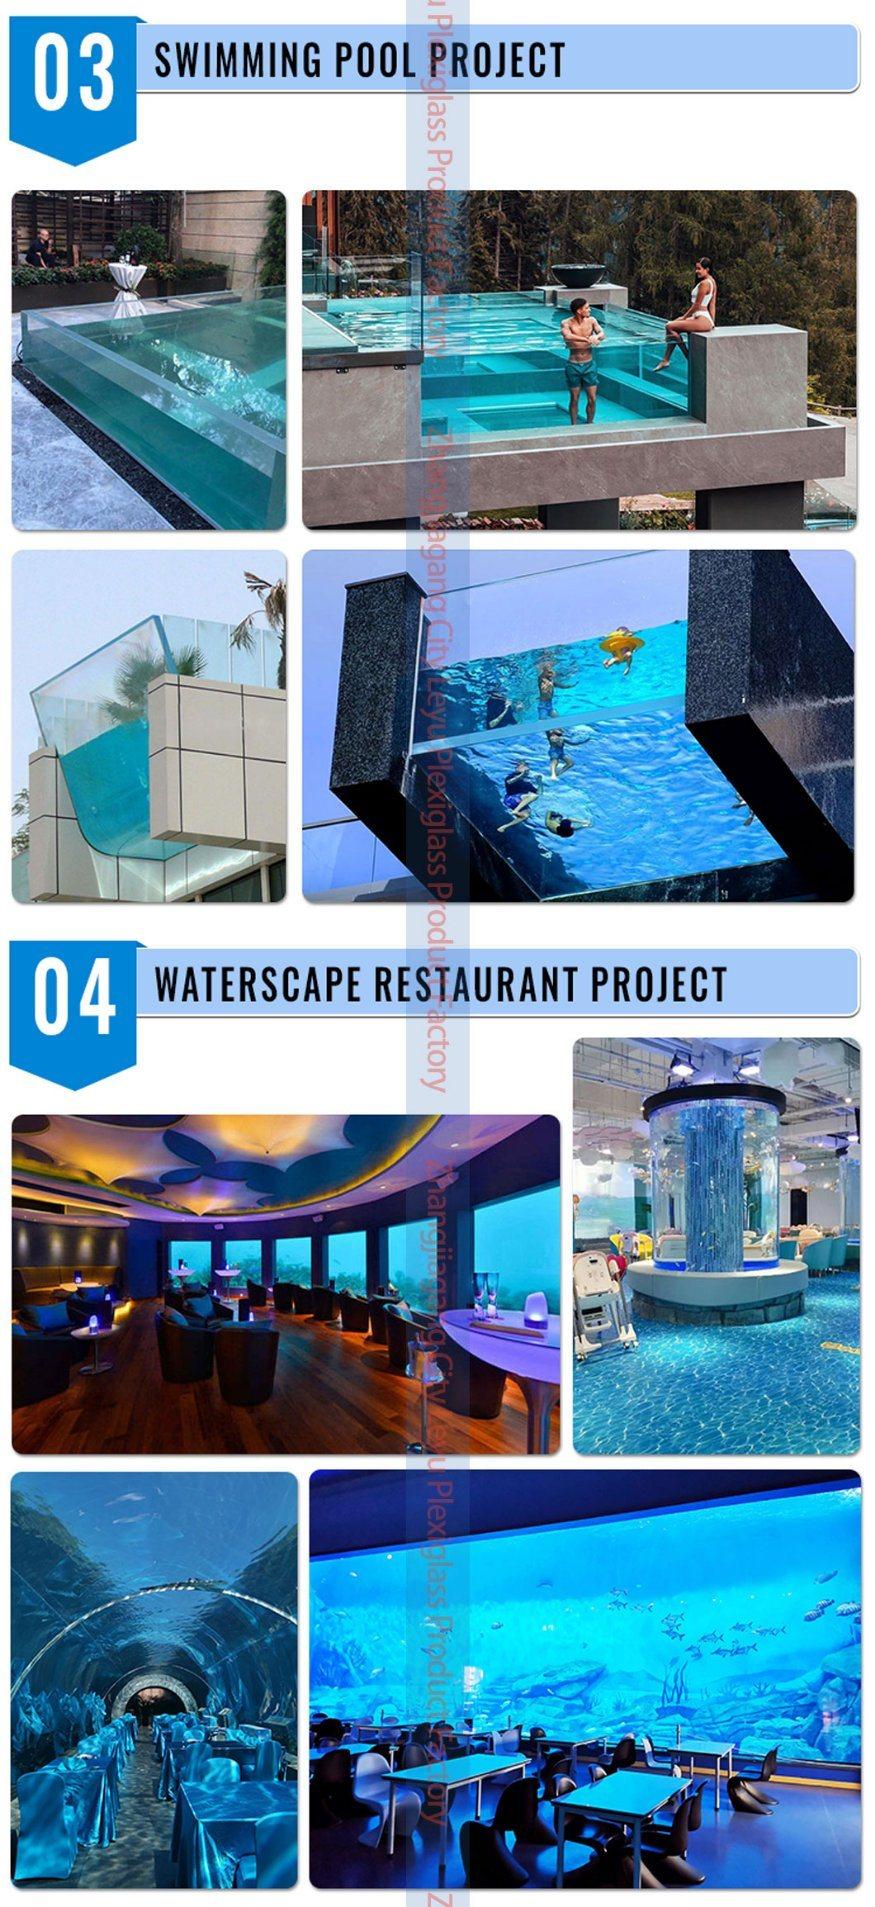 Big Acrylic Aquarium / Custom Sizes Acrylic Fish Tank